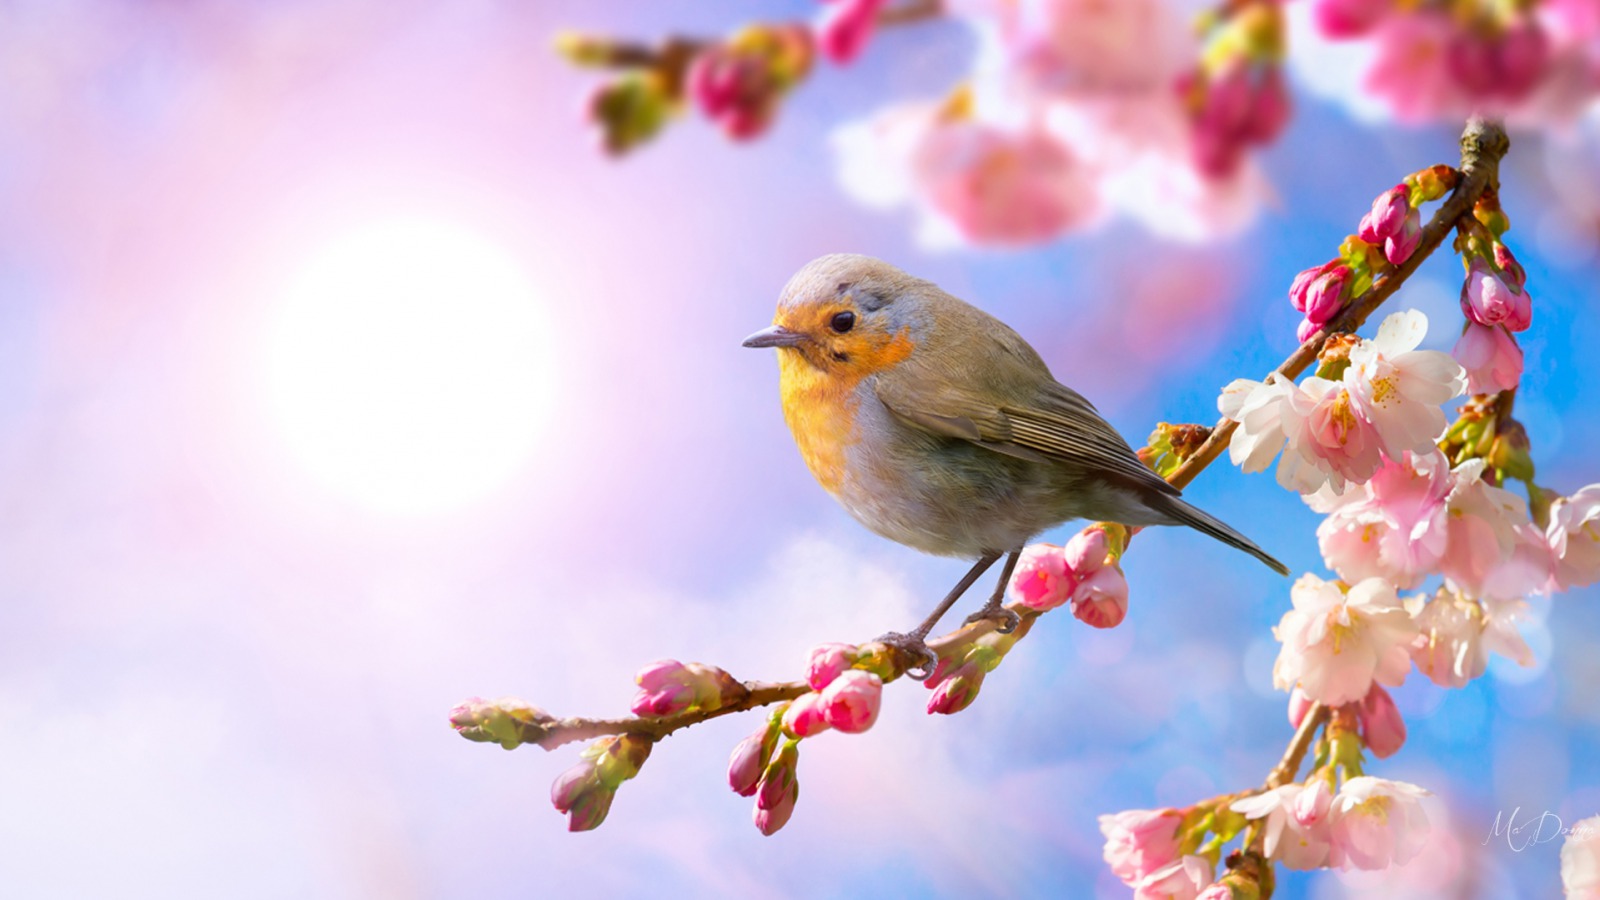 Mùa xuân: Chào đón mùa xuân tươi đẹp với một số bức ảnh về mùa xuân hoàn mỹ. Hình ảnh về hoa, bầu trời xanh, và những cái đầu tiên của sự sống sẽ khiến trái tim bạn nhảy múa và đón nhận một mùa xuân đầy màu sắc.